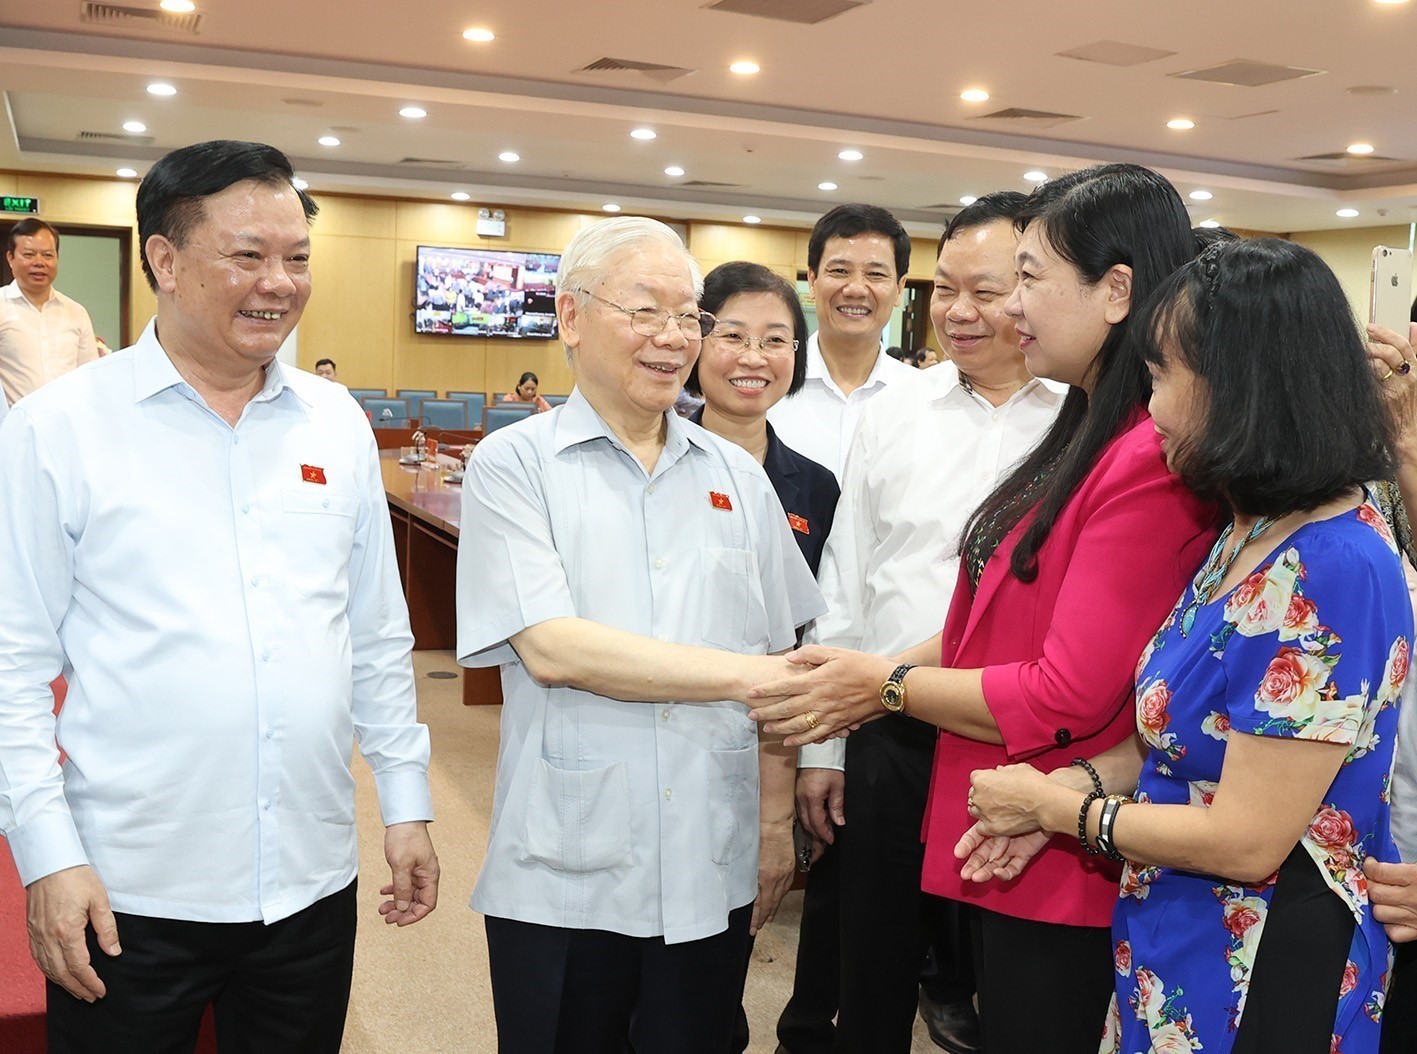 Tổng Bí thư Nguyễn Phú Trọng và đội ngũ cán bộ, cử tri tại quận Đống Đa, Hà Nội_Ảnh: TTXVN.